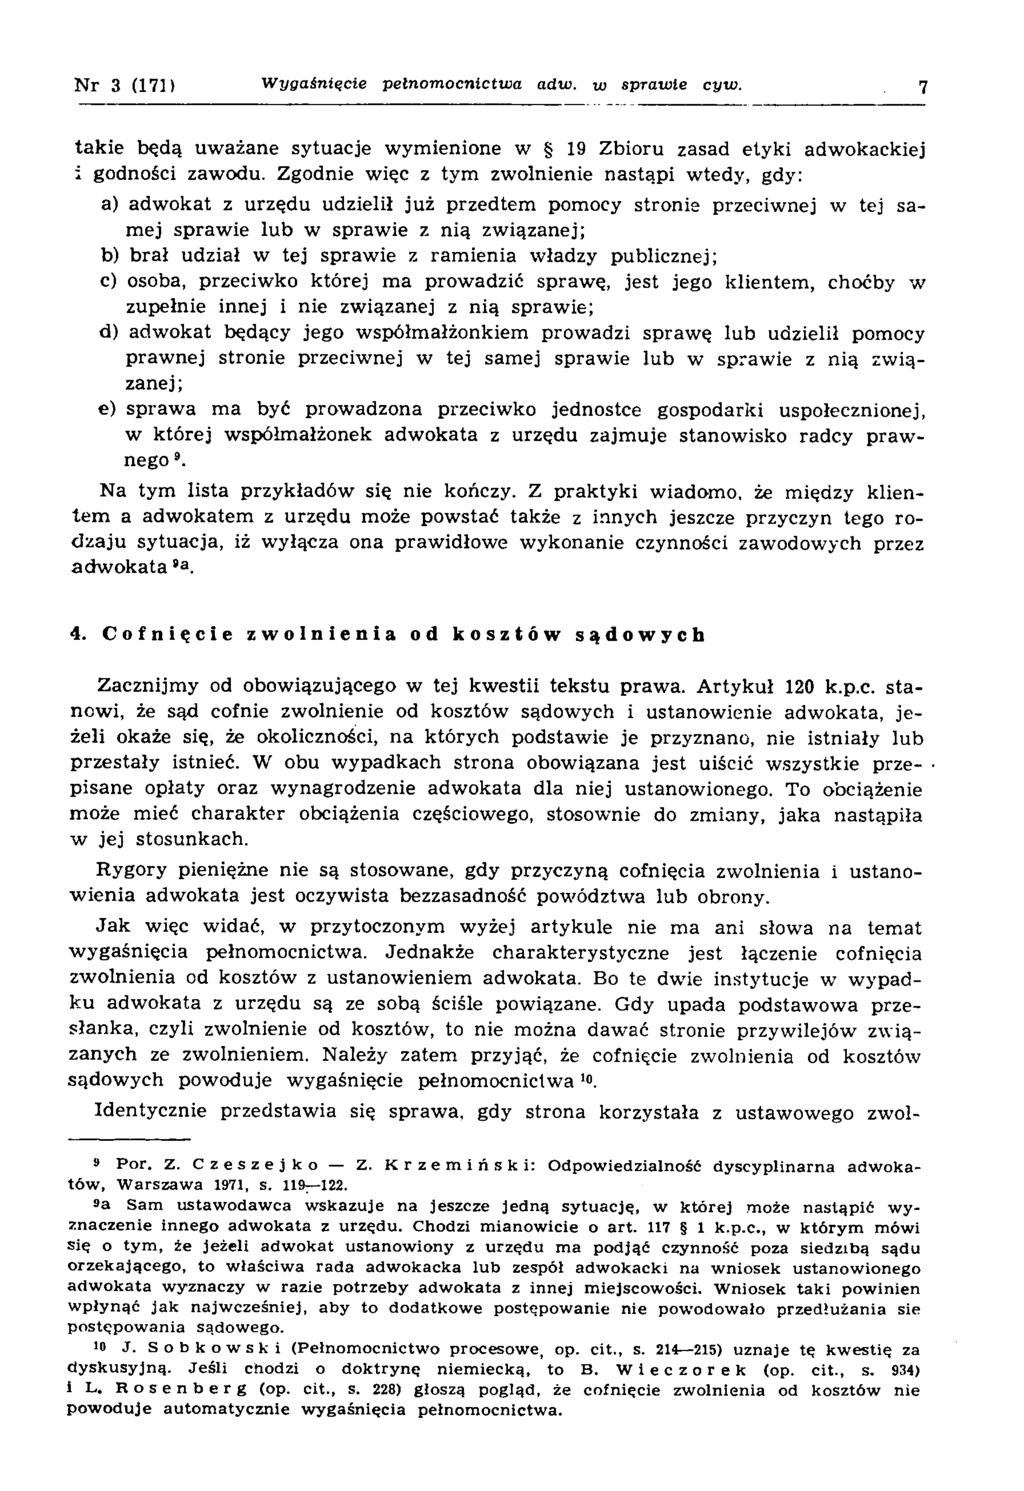 Zdzisław Krzemiński Wygaśnięcie pełnomocnictwa adwokata z urzędu w sprawie  cywilnej. Palestra 16/3(171), PDF Free Download